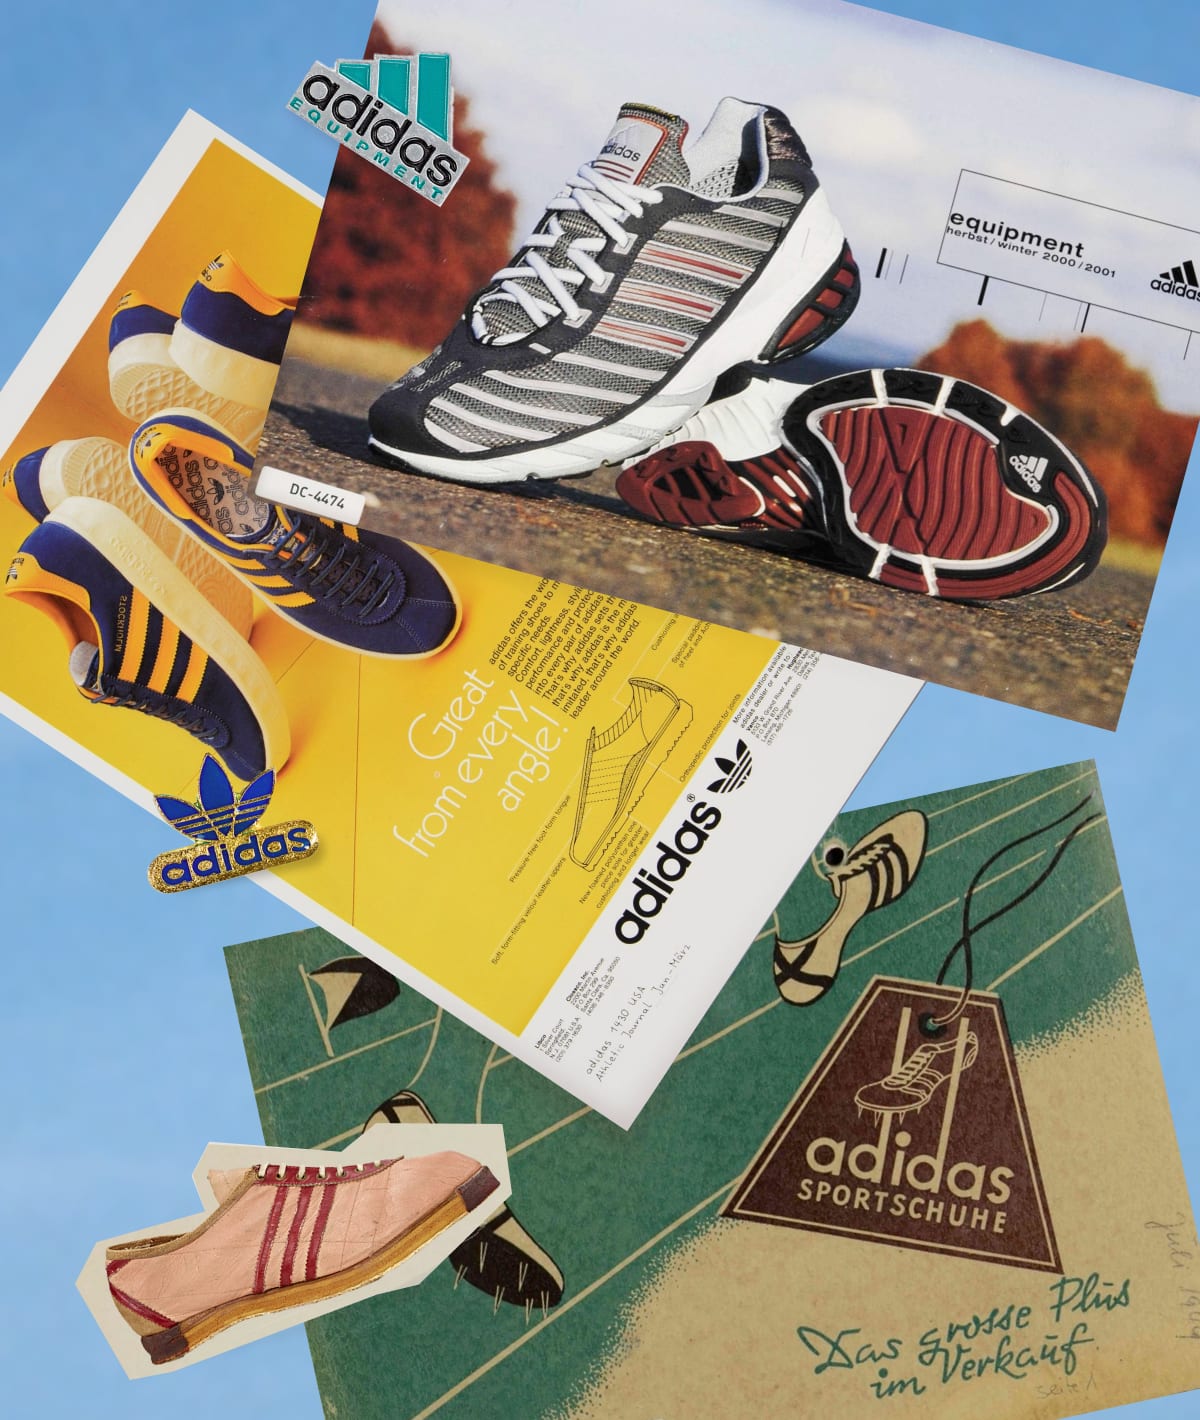 Gooey ziekte Aardewerk adidas Logos: History and Meaning